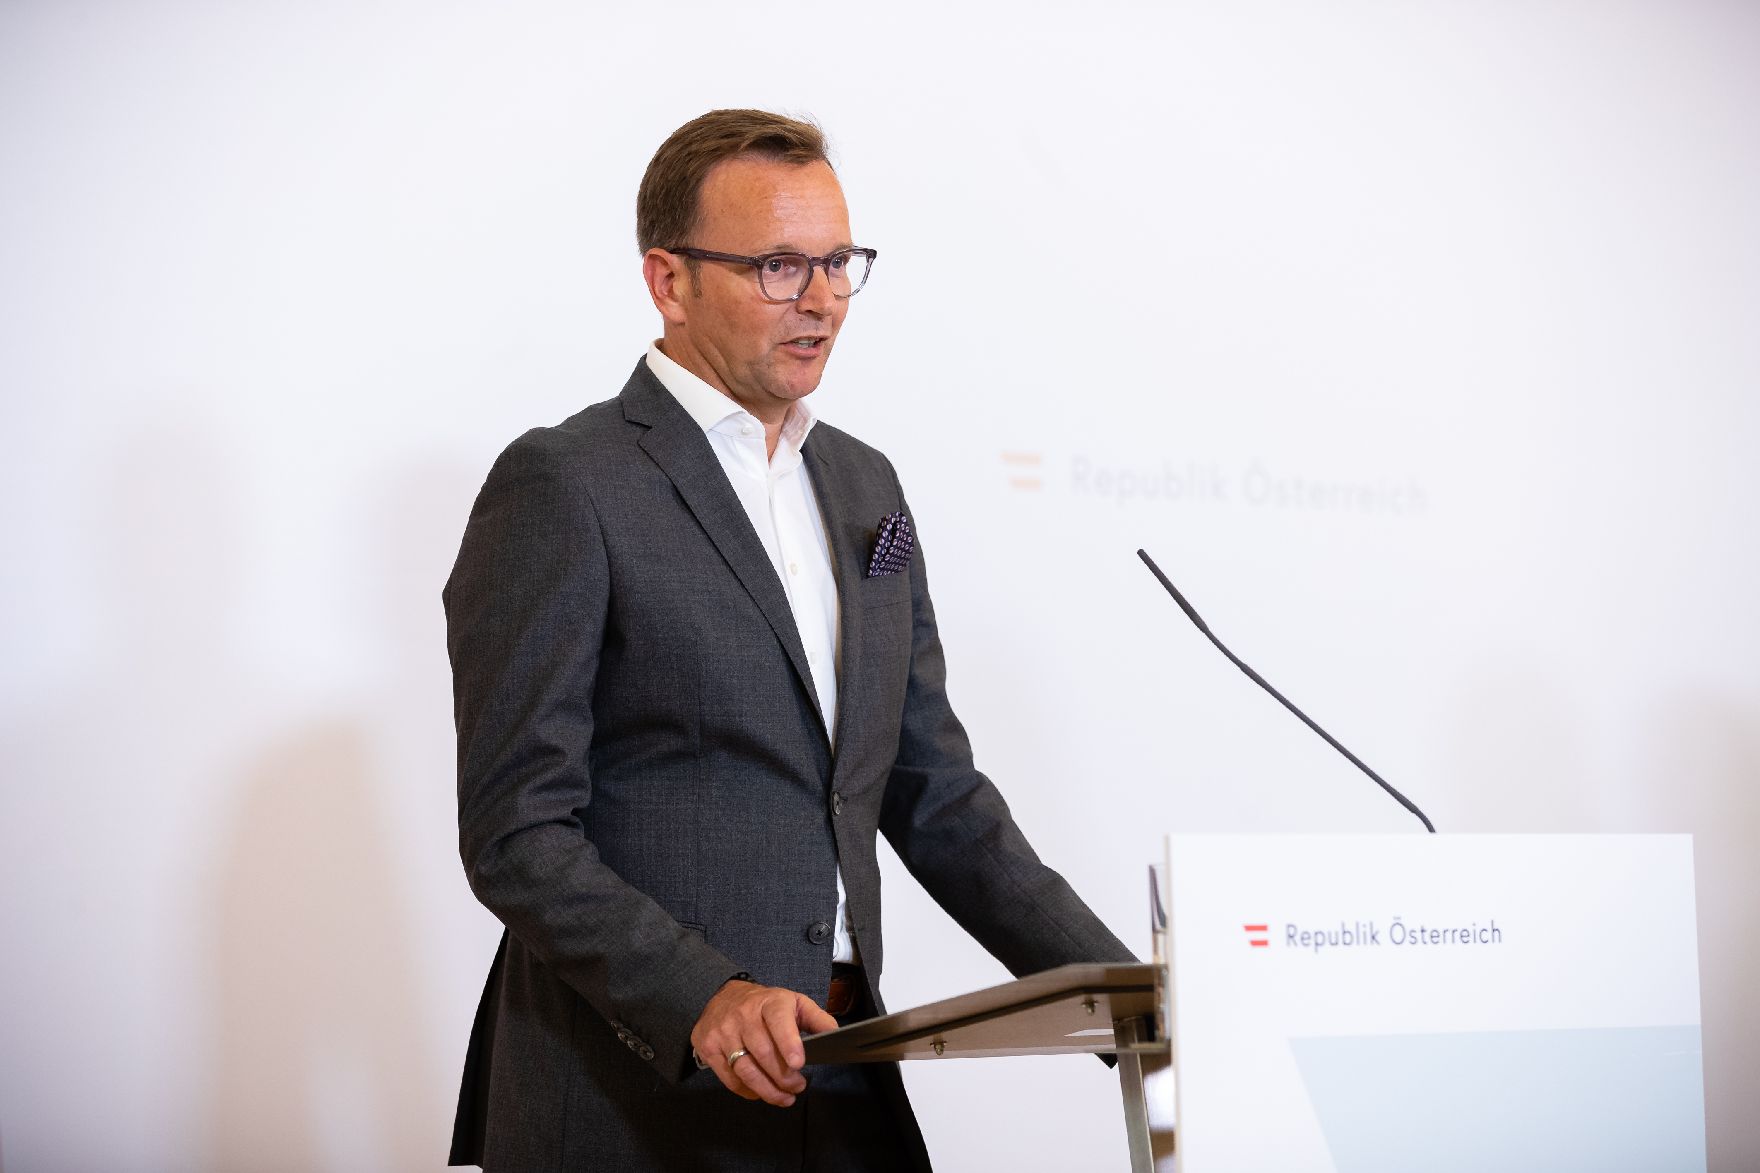 Am 27. Juli 2020 fand ein Pressestatement zu den Maßnahmen gegen die Krise im Bundeskanzleramt statt. Im Bild Michael Kocher, Country President Novartis Austria.